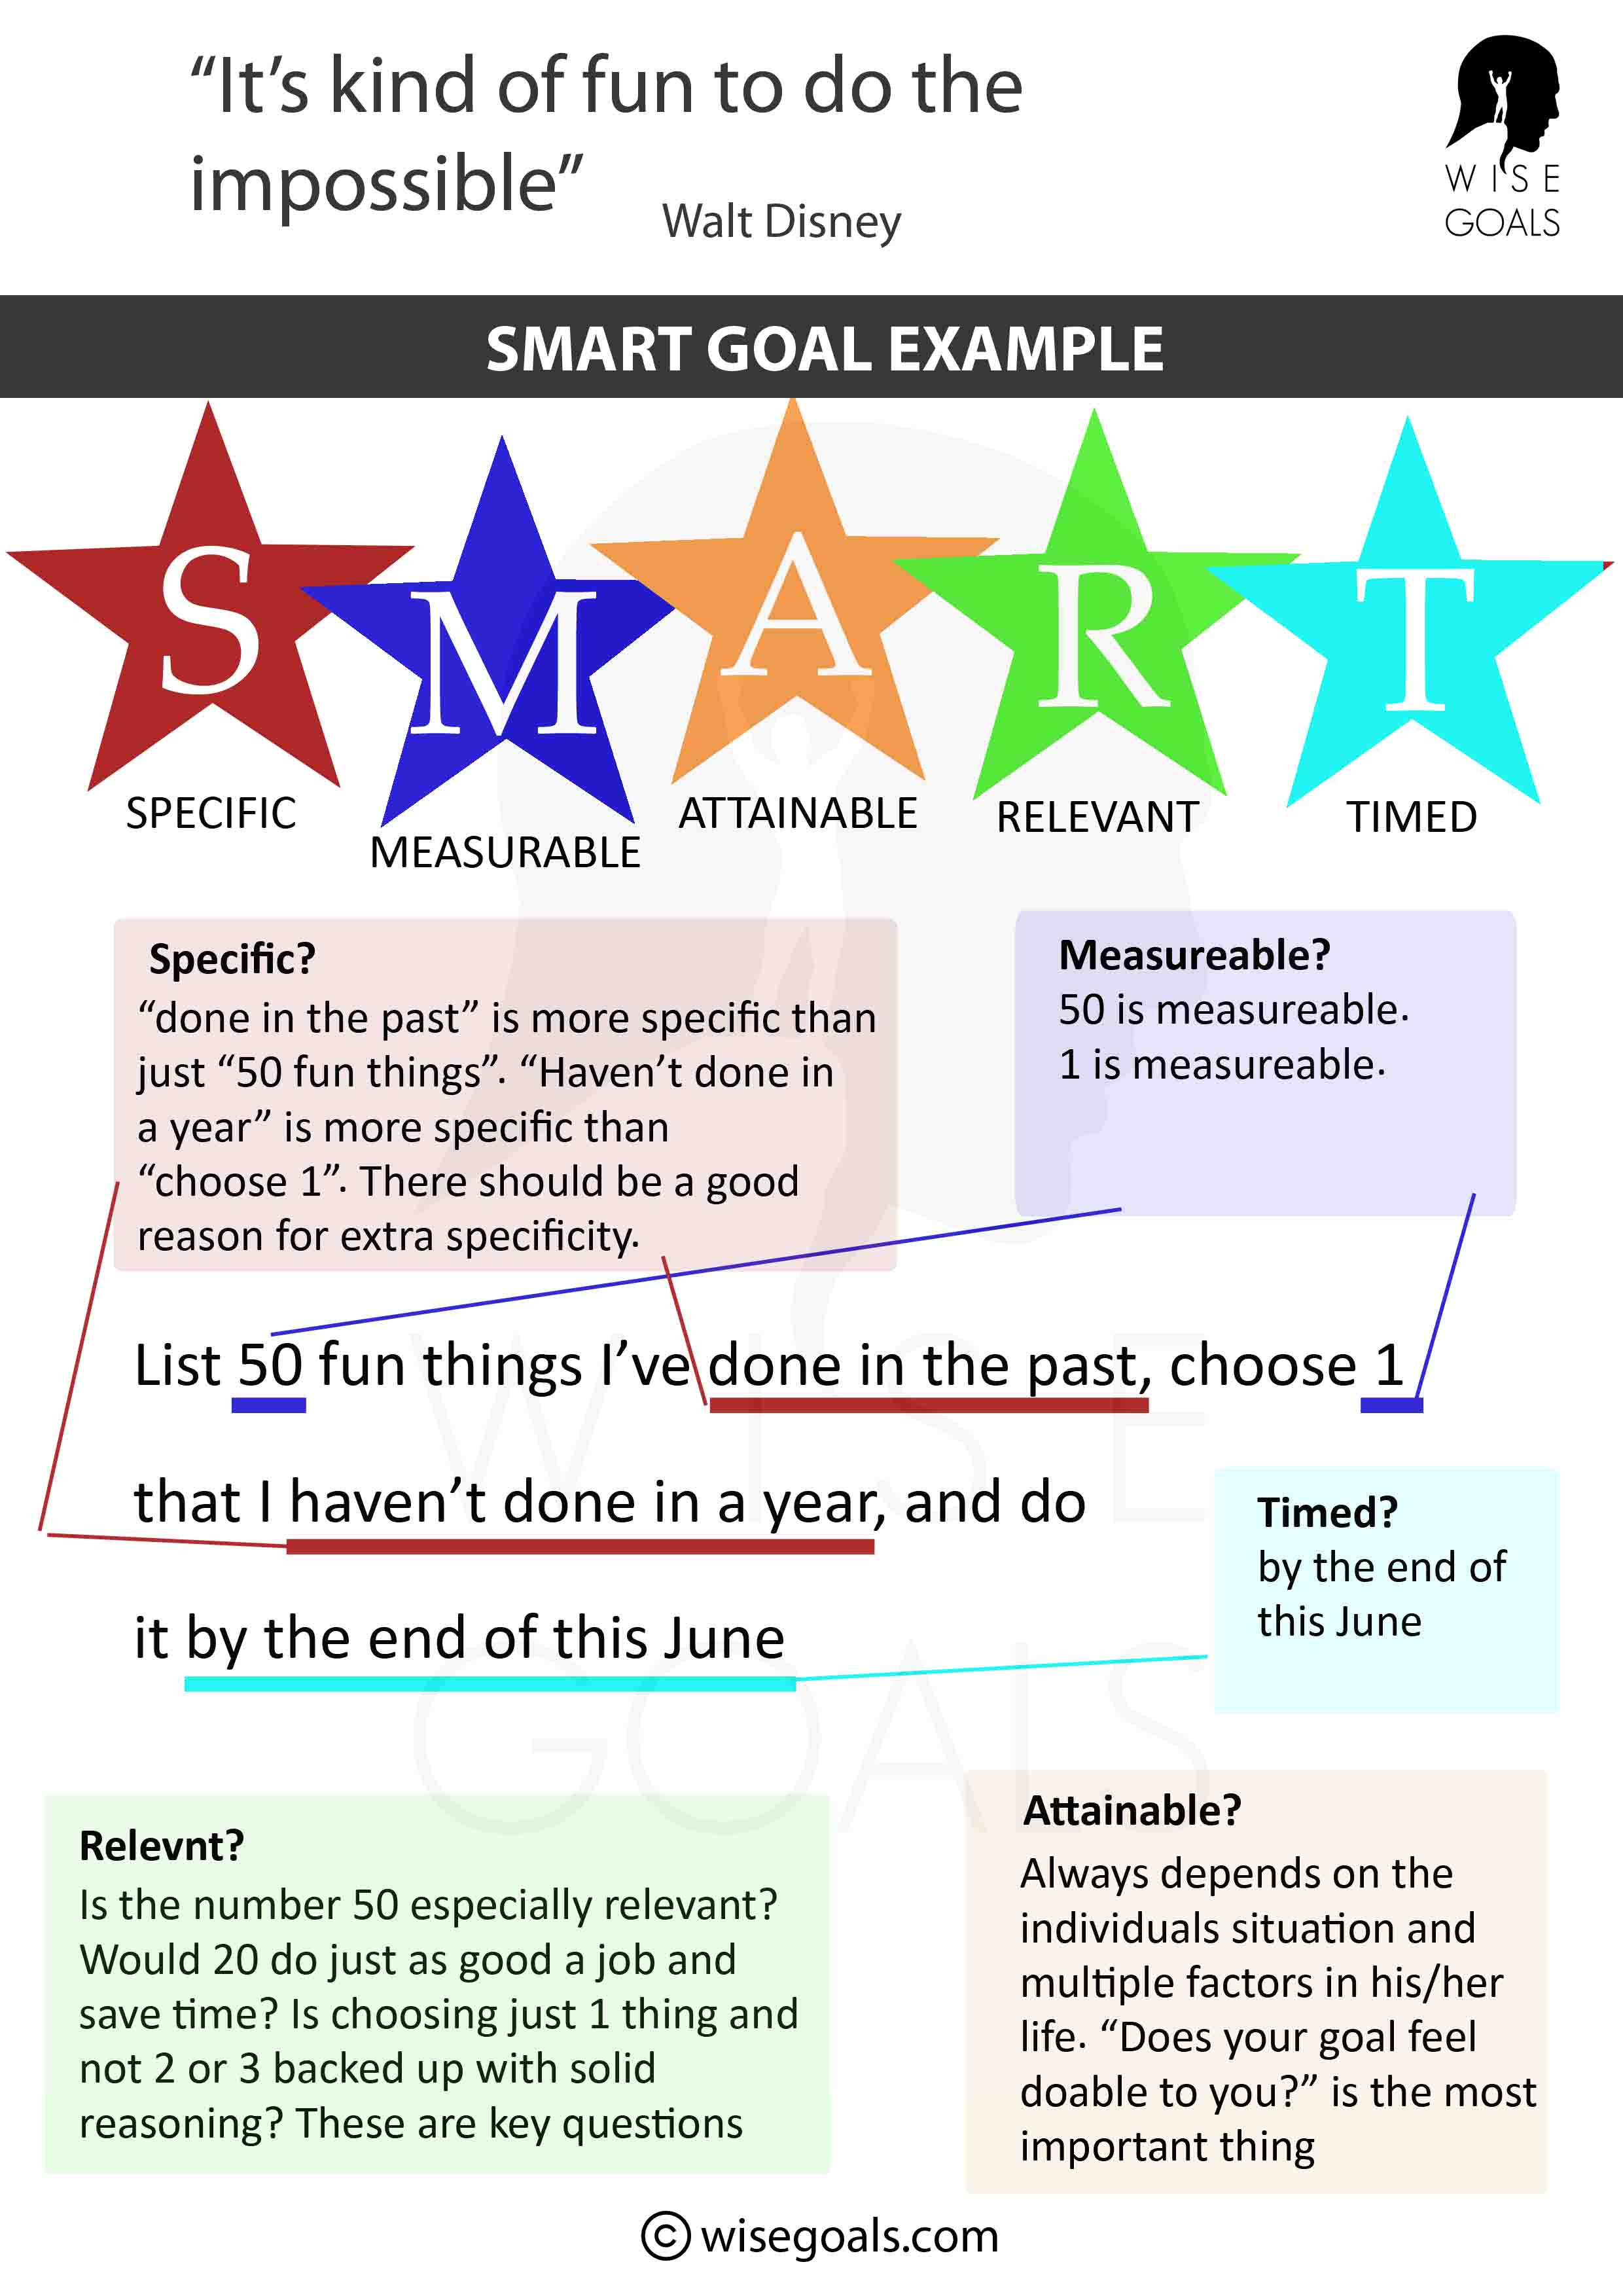 Smart goal example: Fun